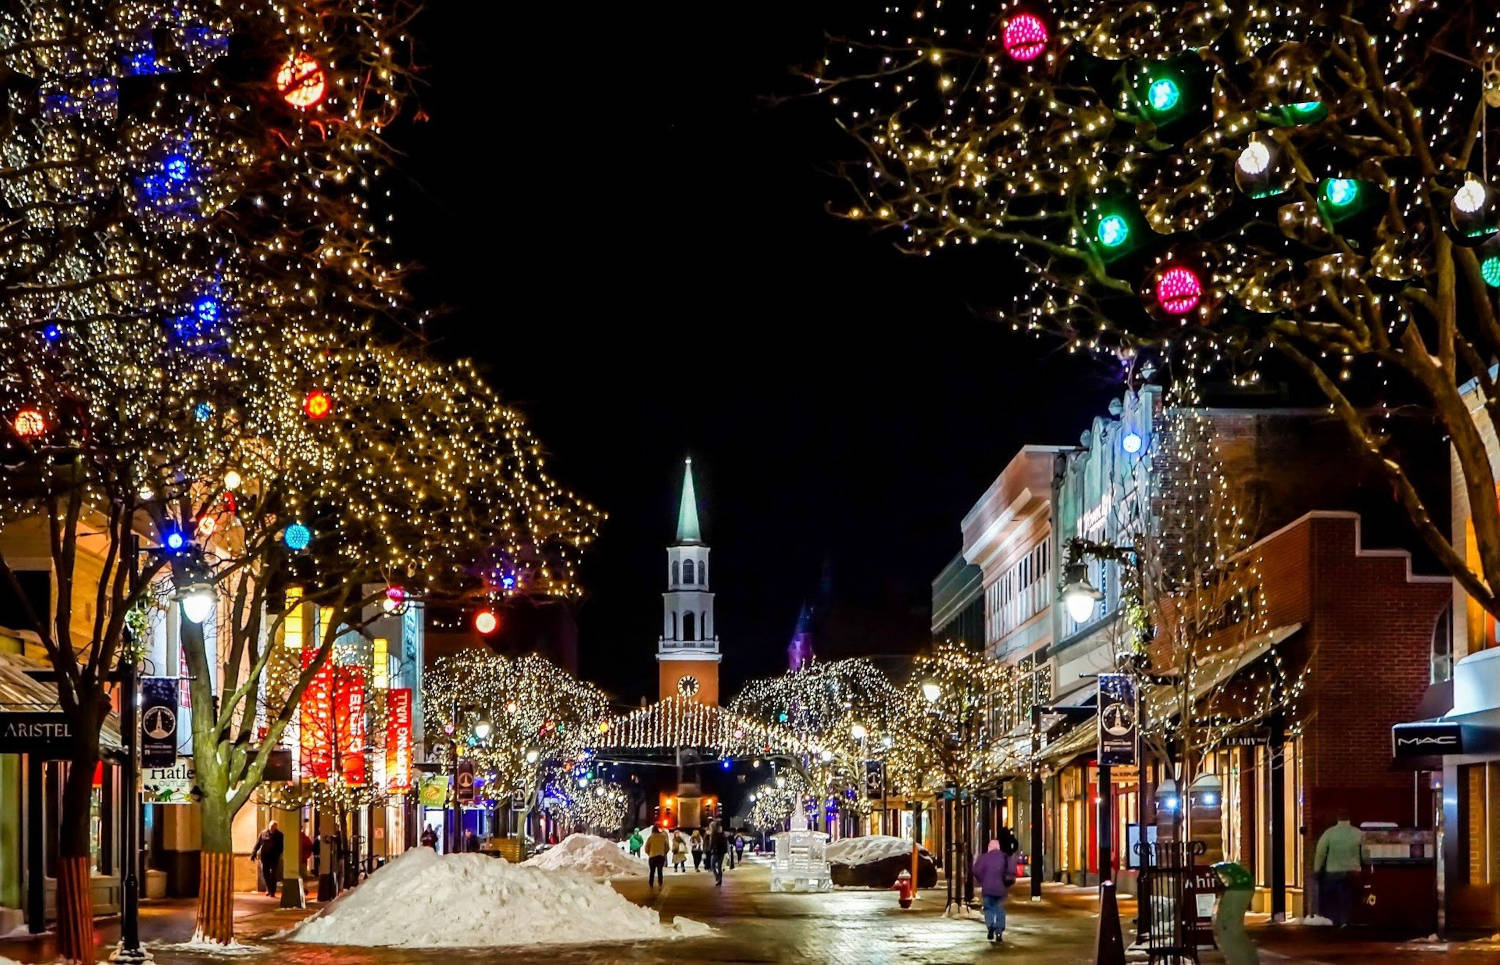 Weihnachten in der Ukraine -Weihnachtsstadt mit Schnee und Lichterschmuck